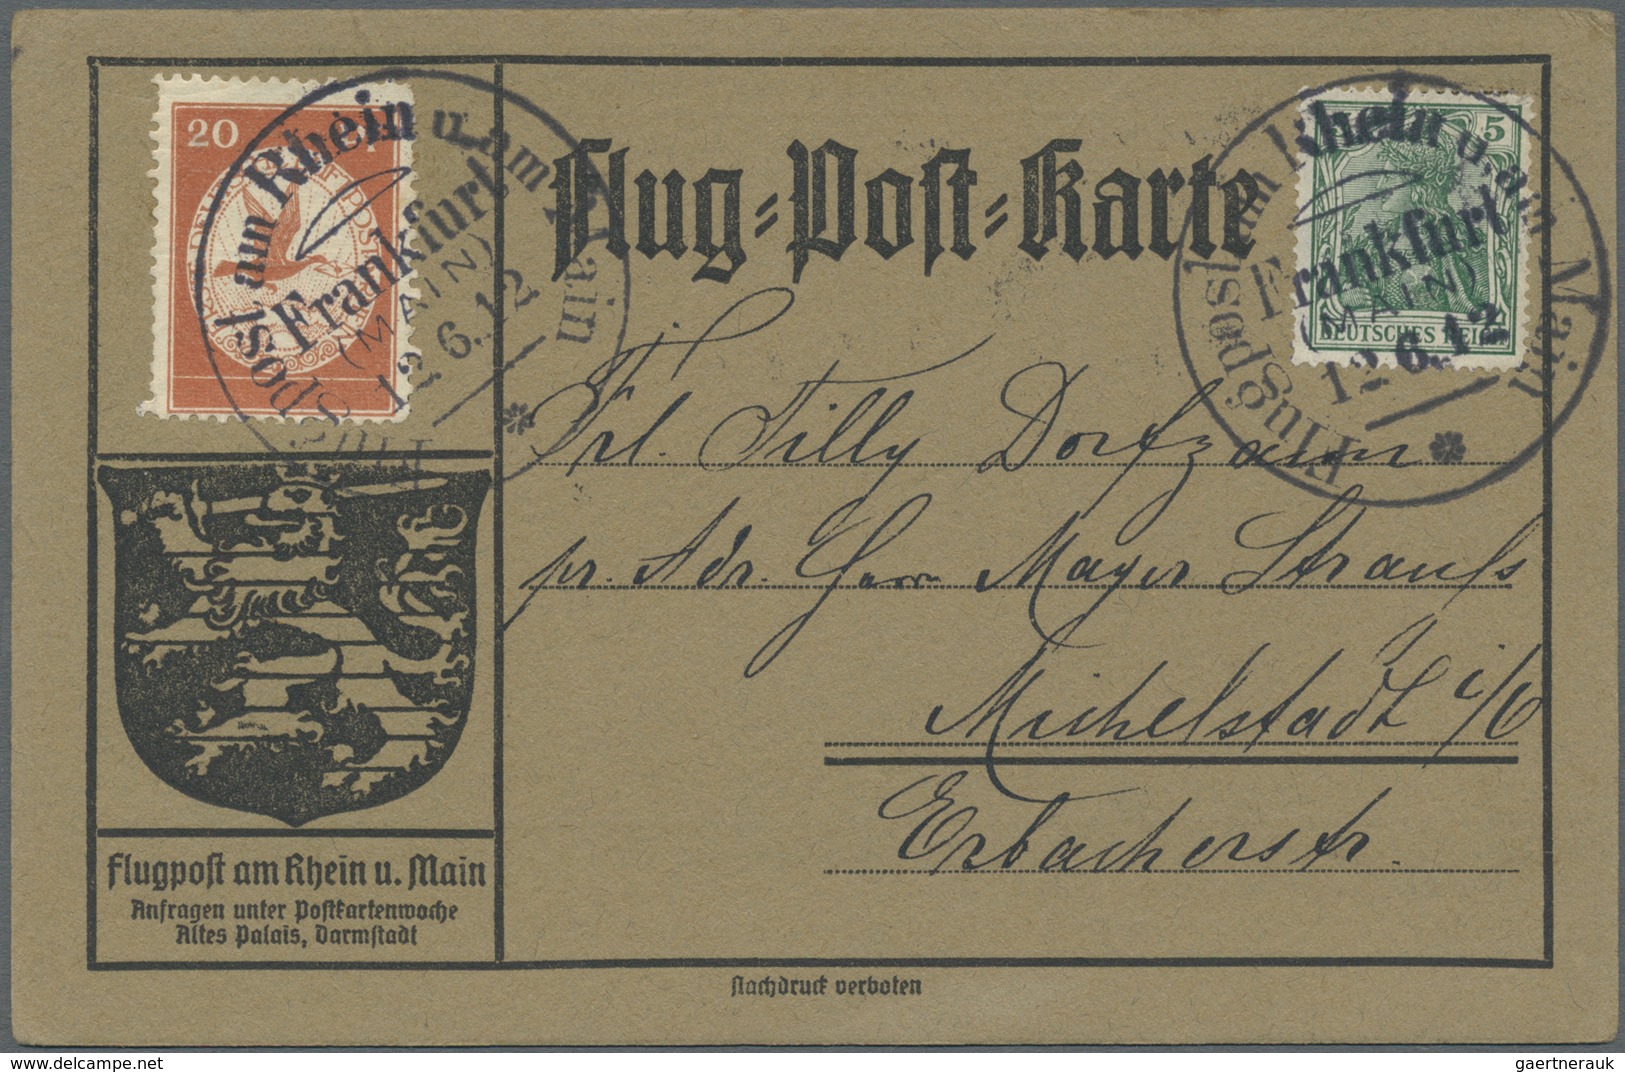 Br Deutsches Reich - Germania: 1912, Flugpost Rhein/Main, offizielle Flugpostkarten ab Frankfurt (Main)